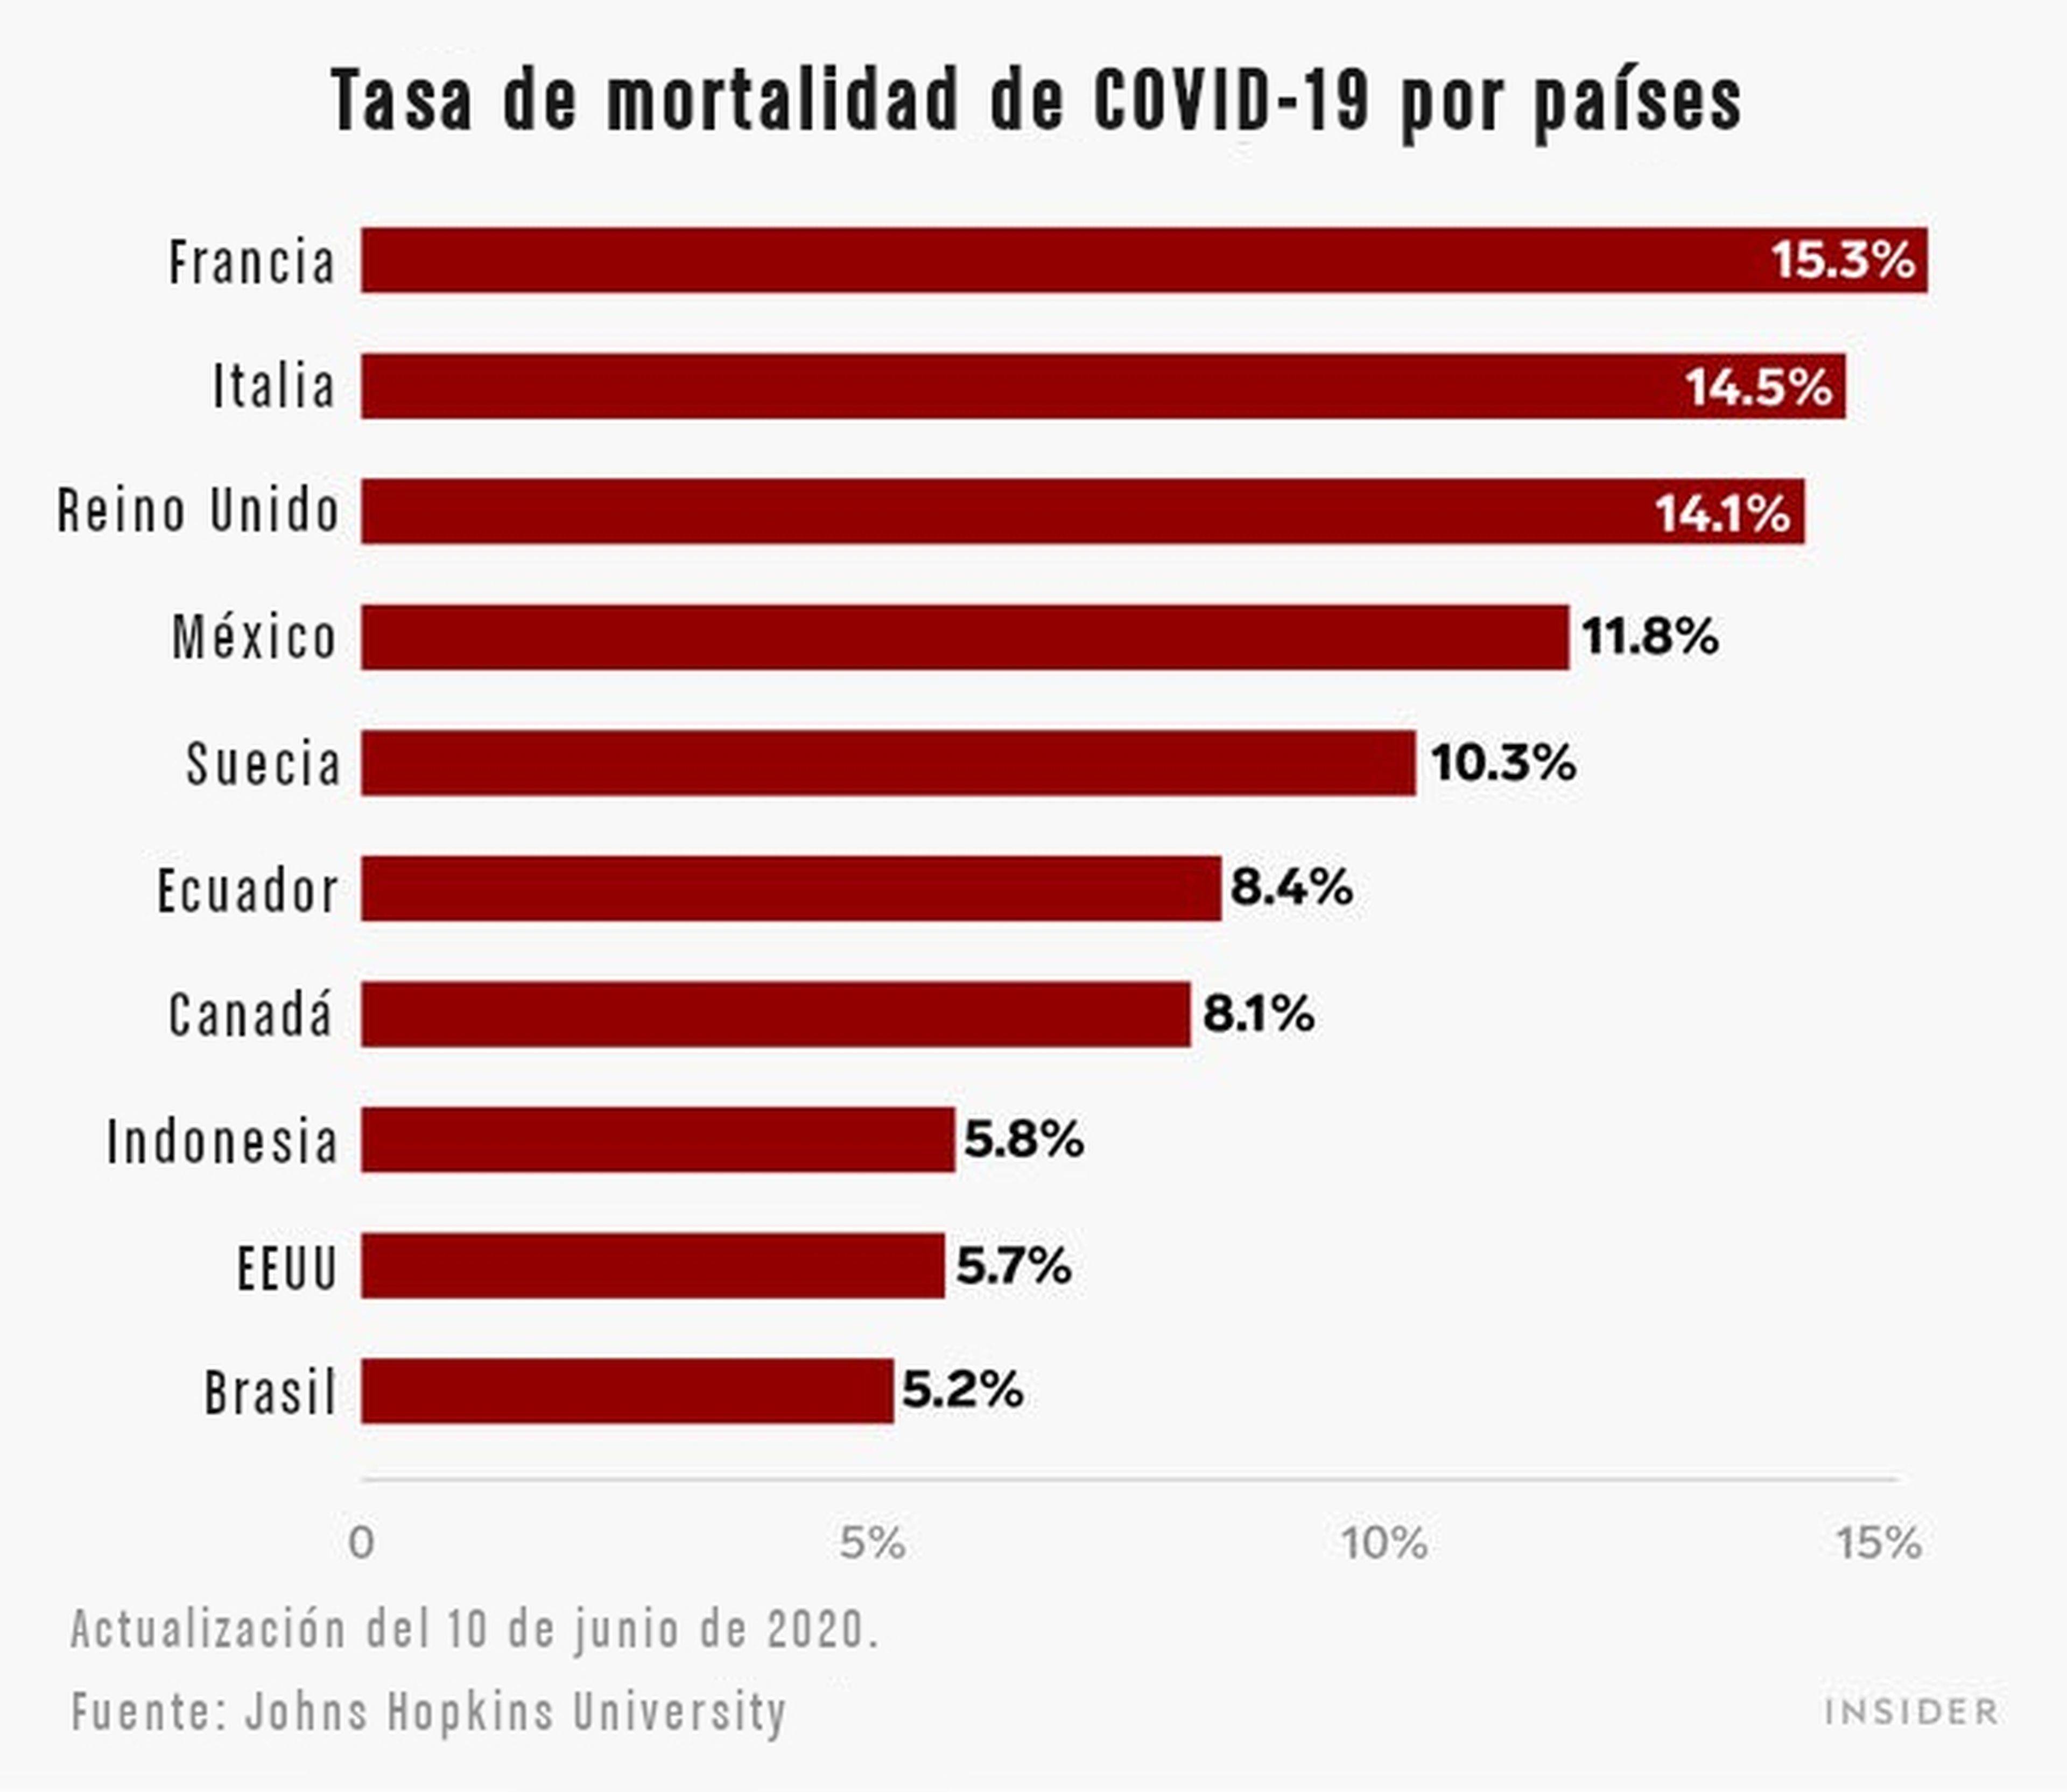 Tasa de moralidad de COVID-19 por países.